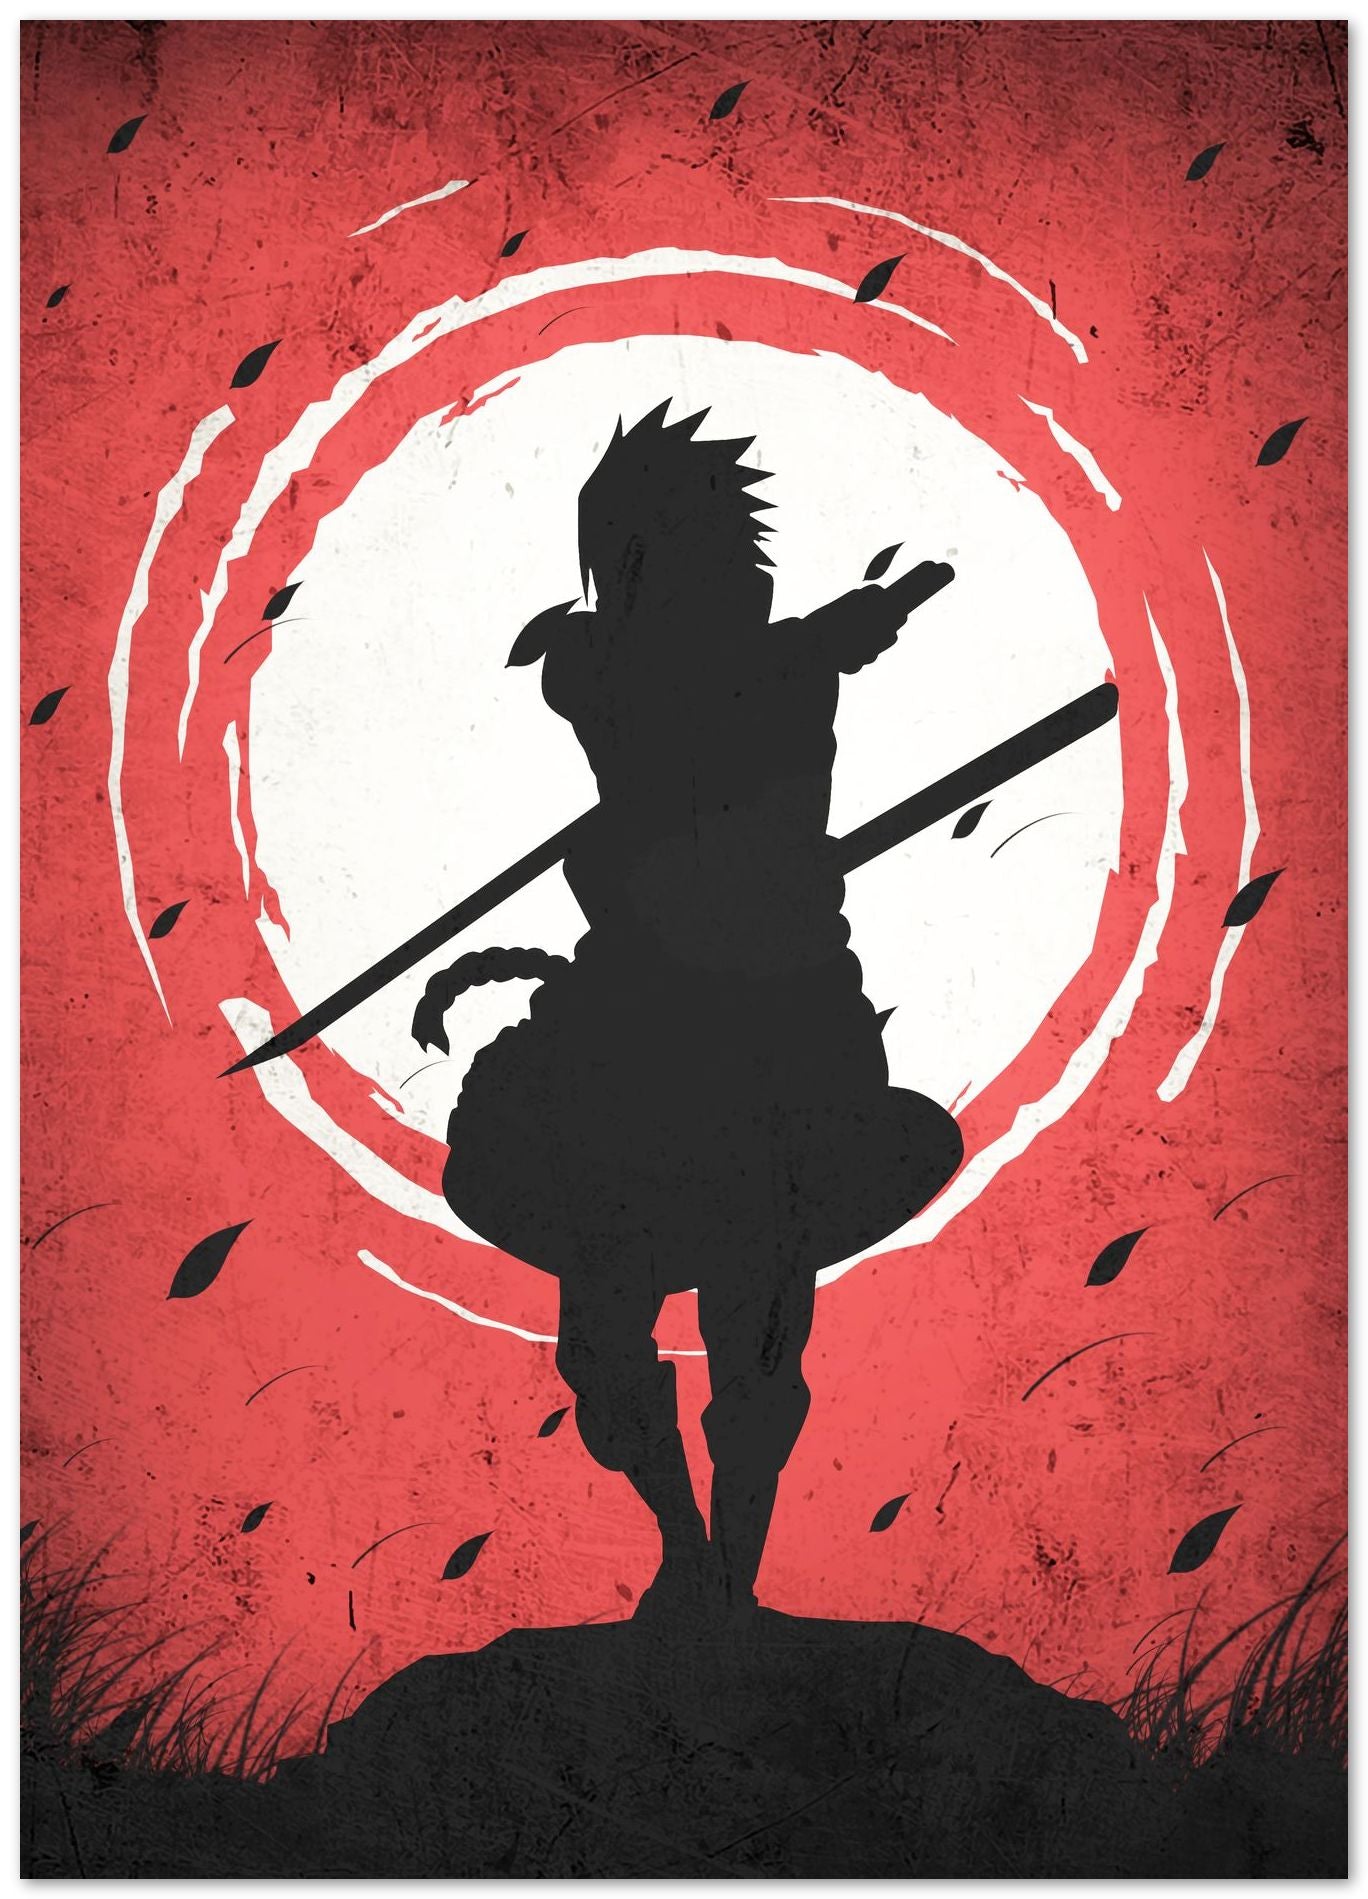 Sasuke Uchiha Silhouette - Naruto Shipuden 1 - @GreyArt